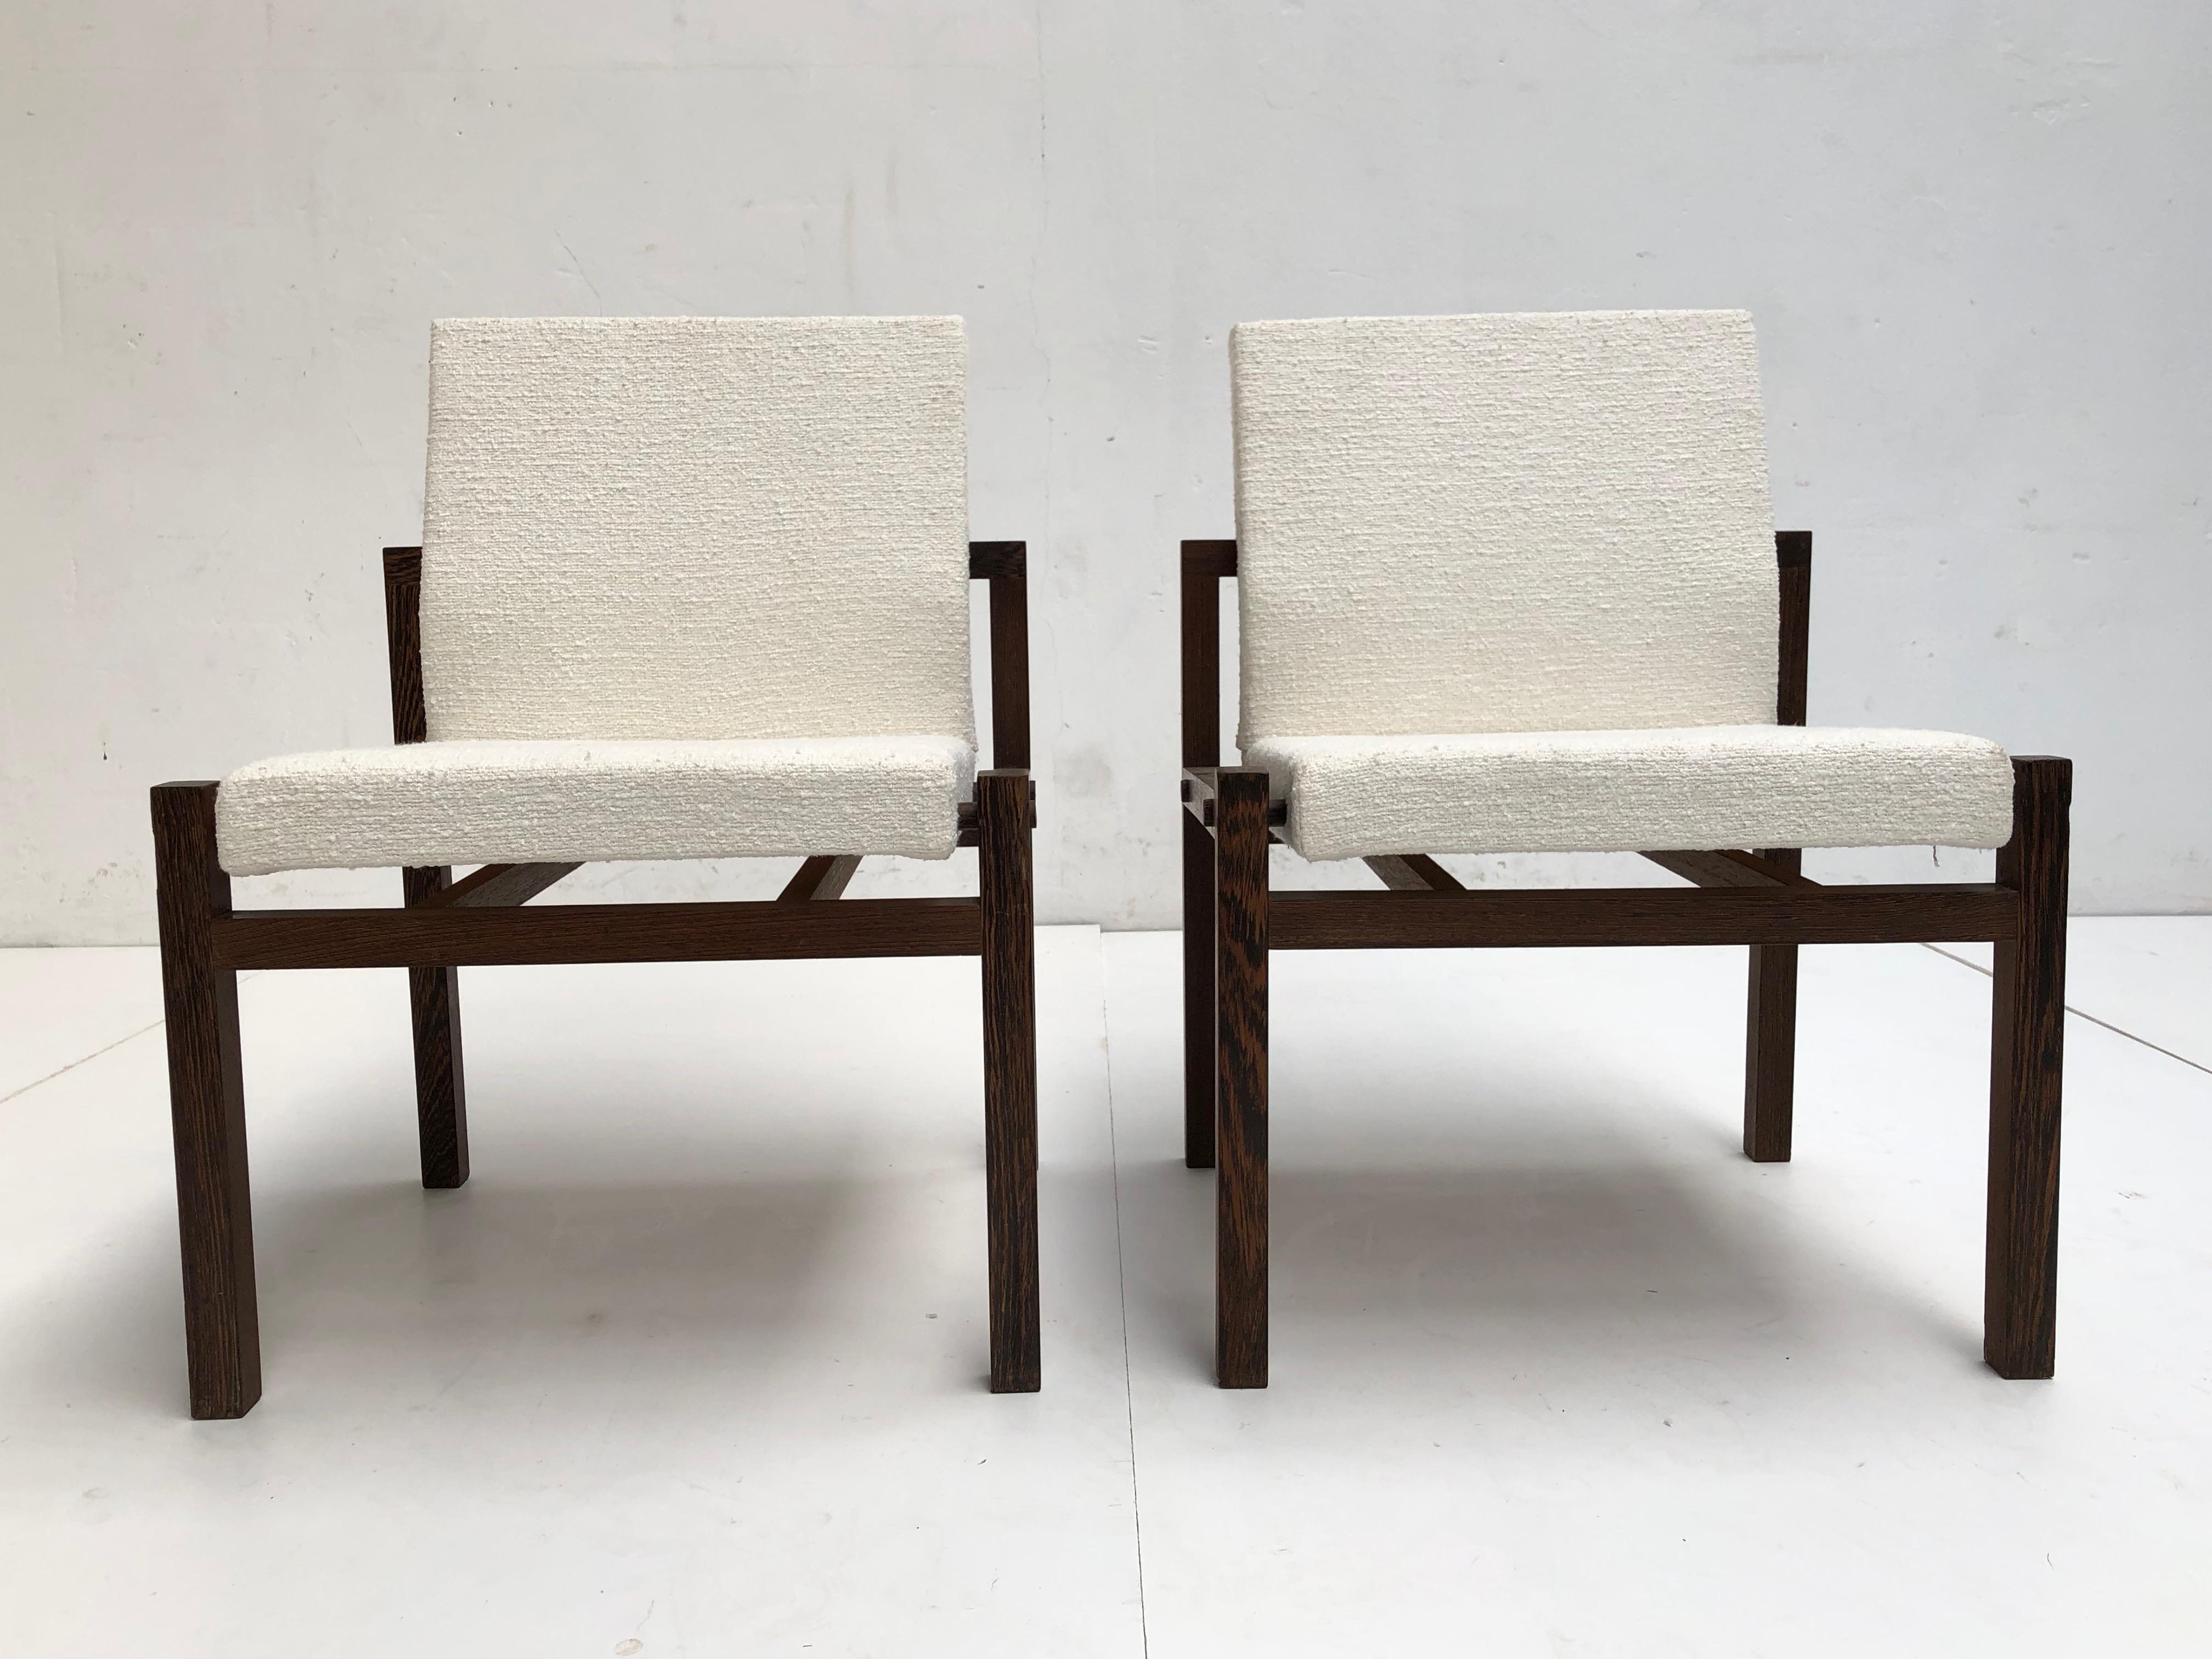 Sehr schön konstruiert und gebaut Paar niederländische Lounge-Stühle, die wahrscheinlich ein Entwurf von Martin Visser oder Hein Stolle für 't Spectrum frühen 1960er Jahren sind.

Die Rahmen sind aus massivem Wengeholz gefertigt und haben